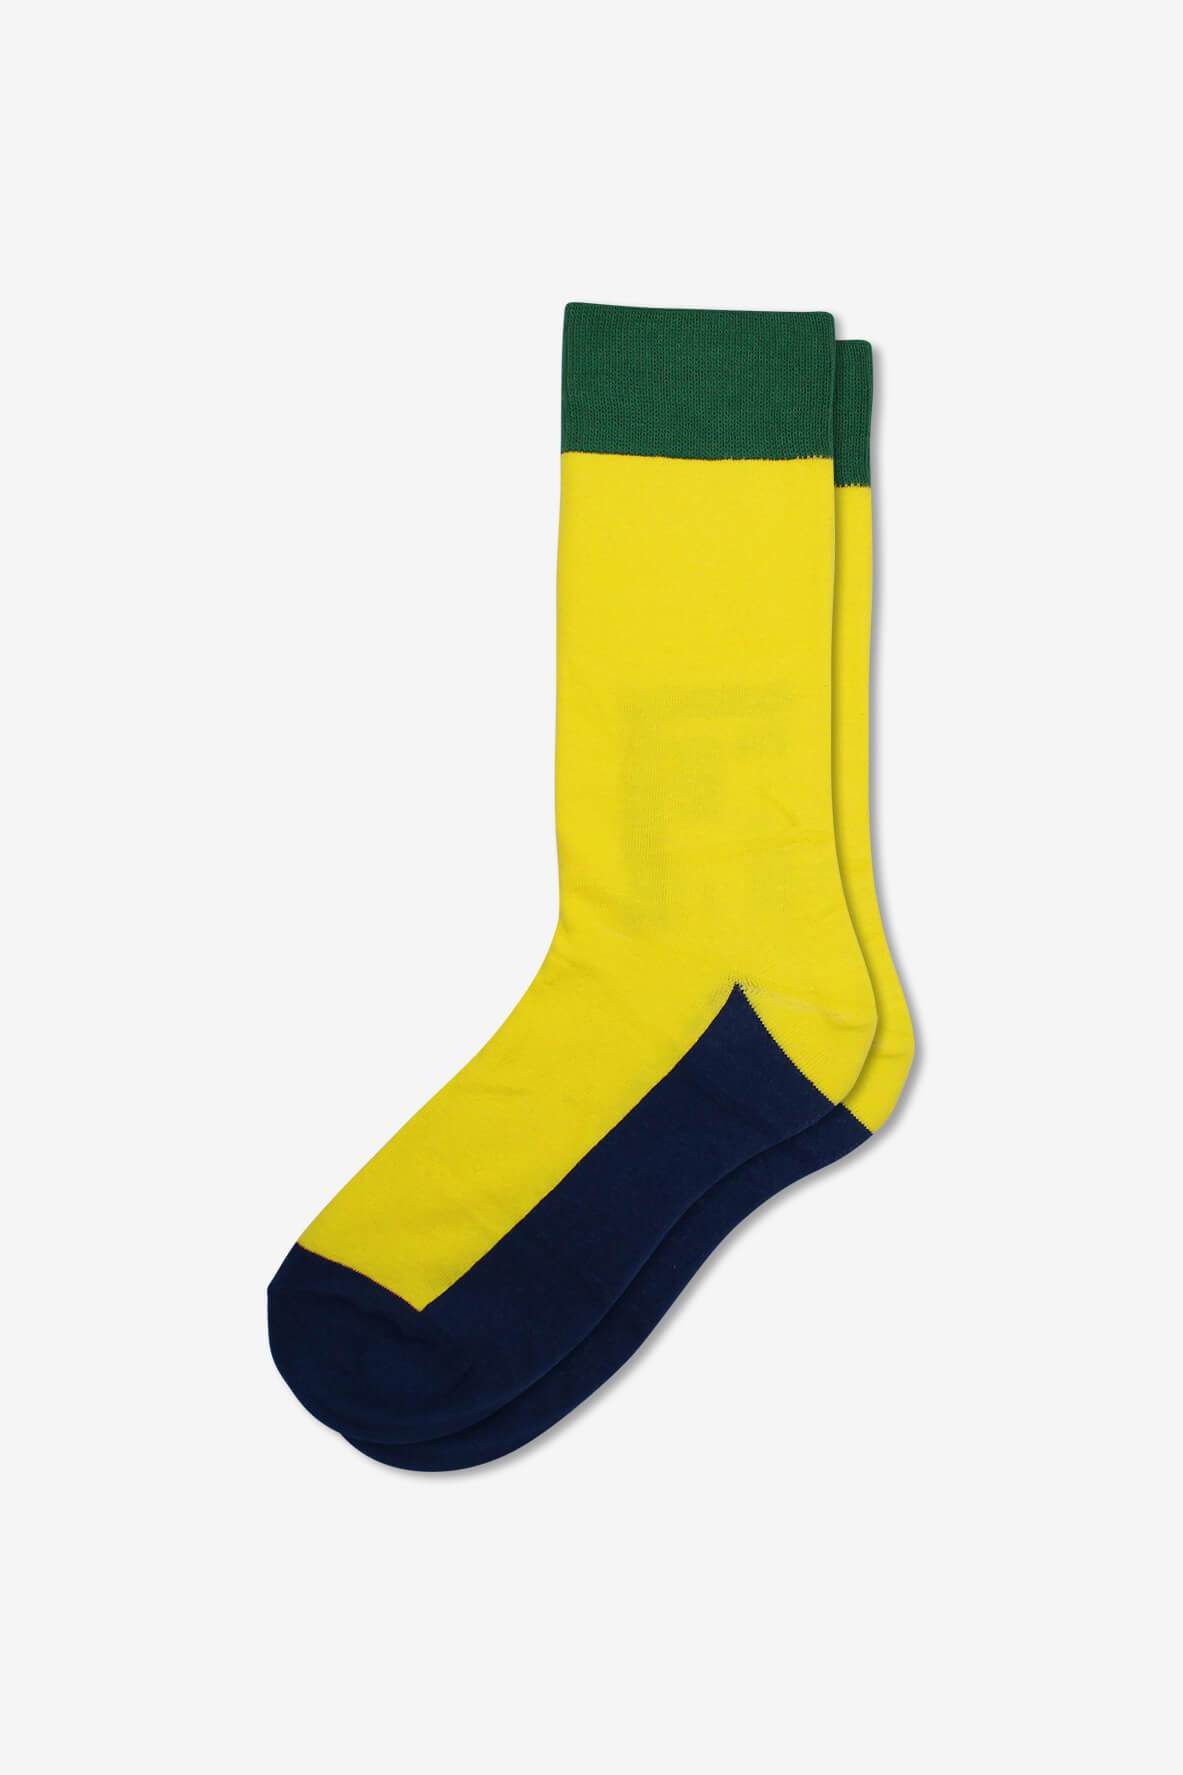 Socks IMG_5253, socks, GoTie